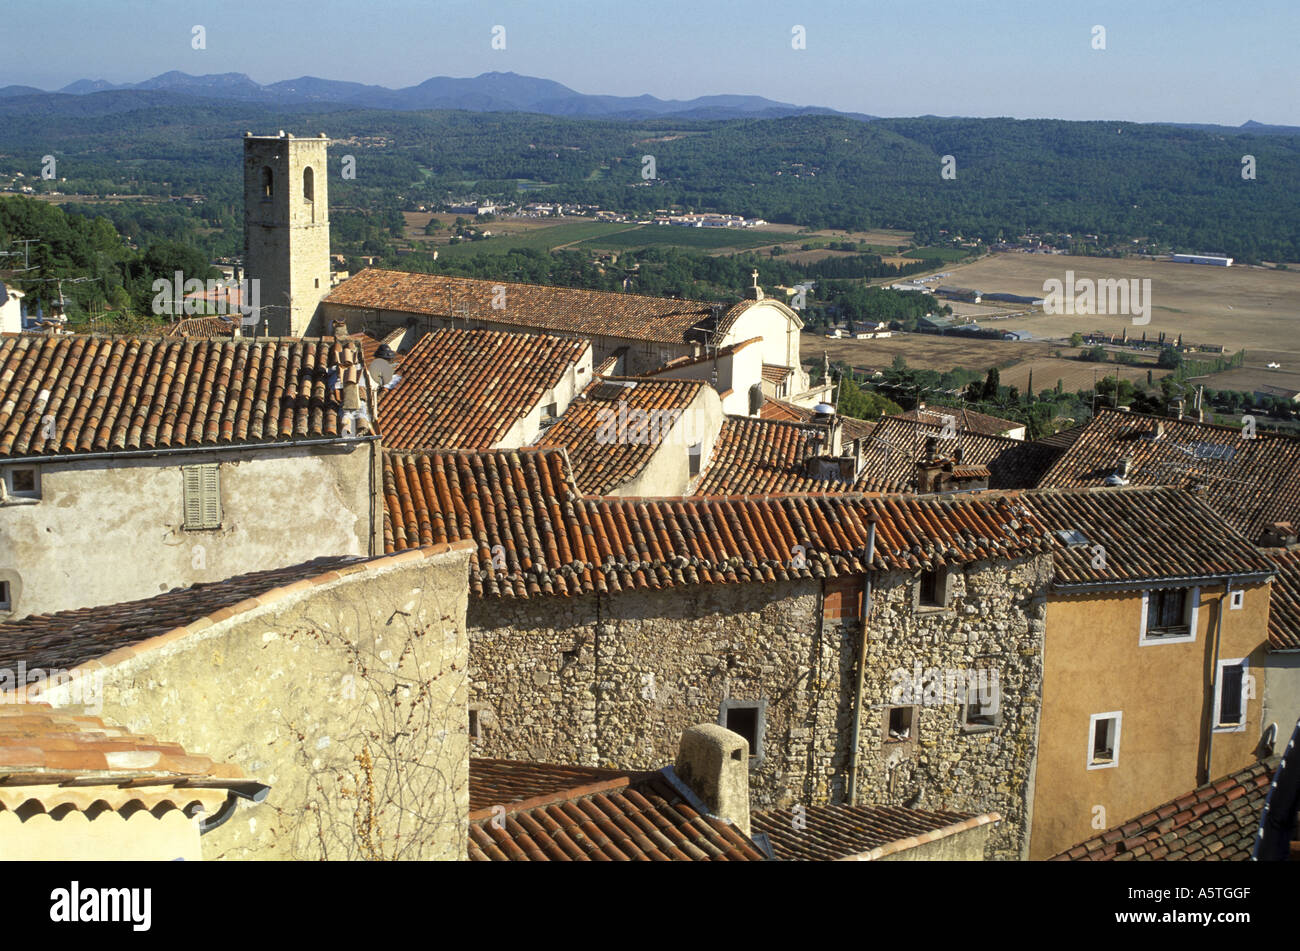 Vue de dessus de toit dans la ville médiévale, Fayence. Le Var, Provence, Cote d 'Azur, sud de la France. Banque D'Images